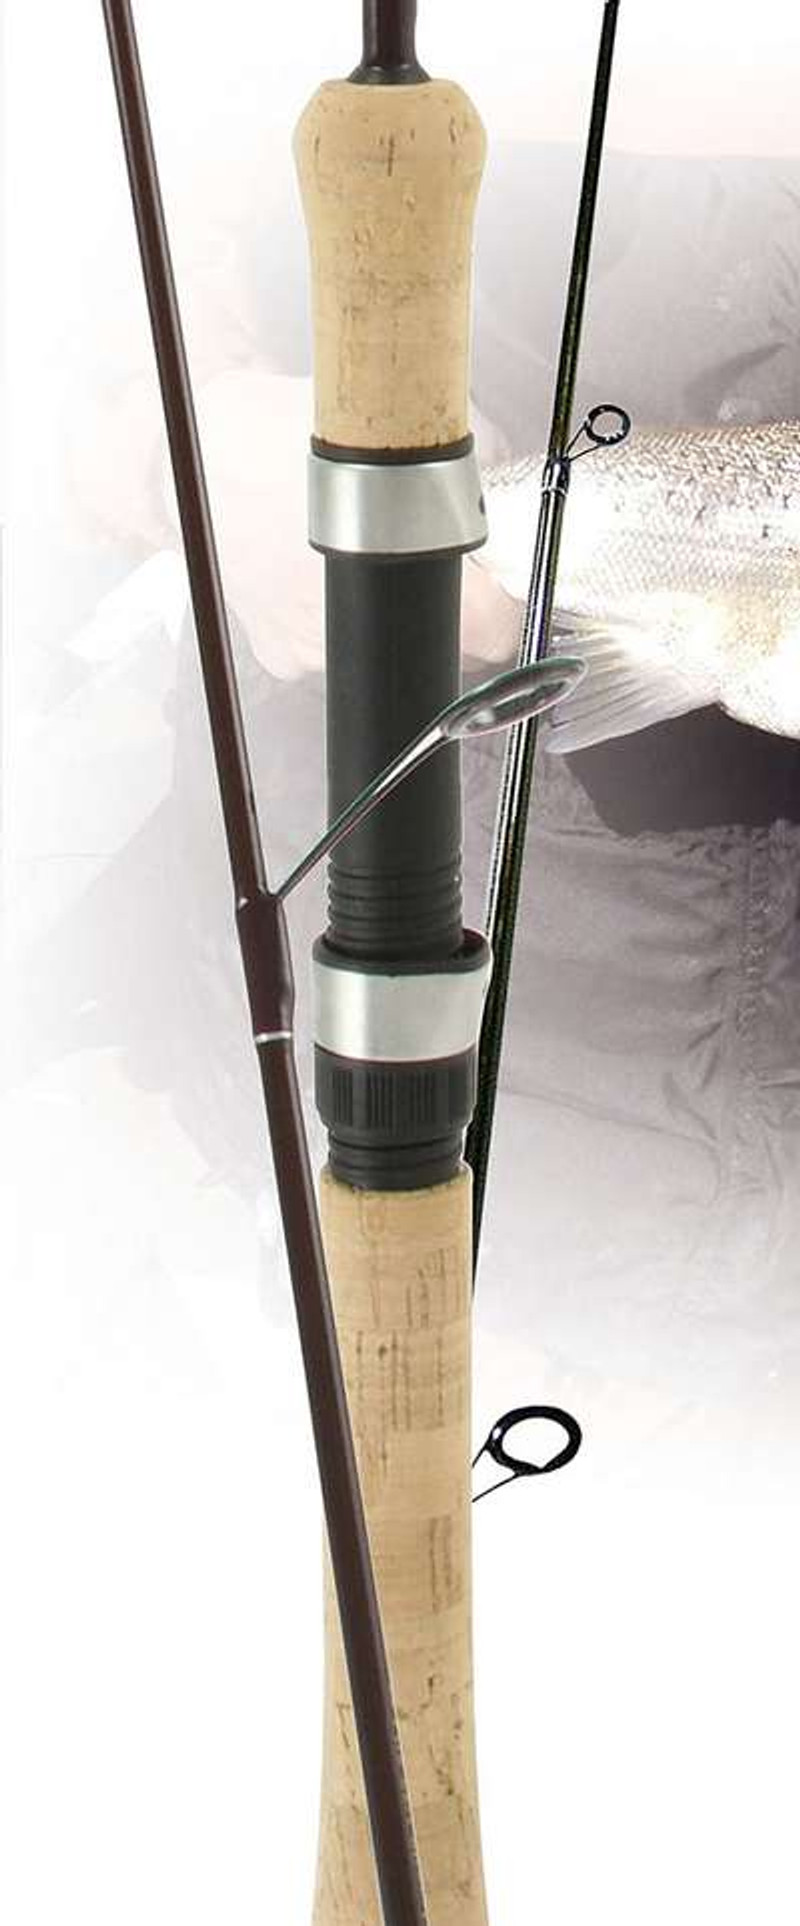 WTS Sedona 1000 with okuma celilo ultralight spinning rod